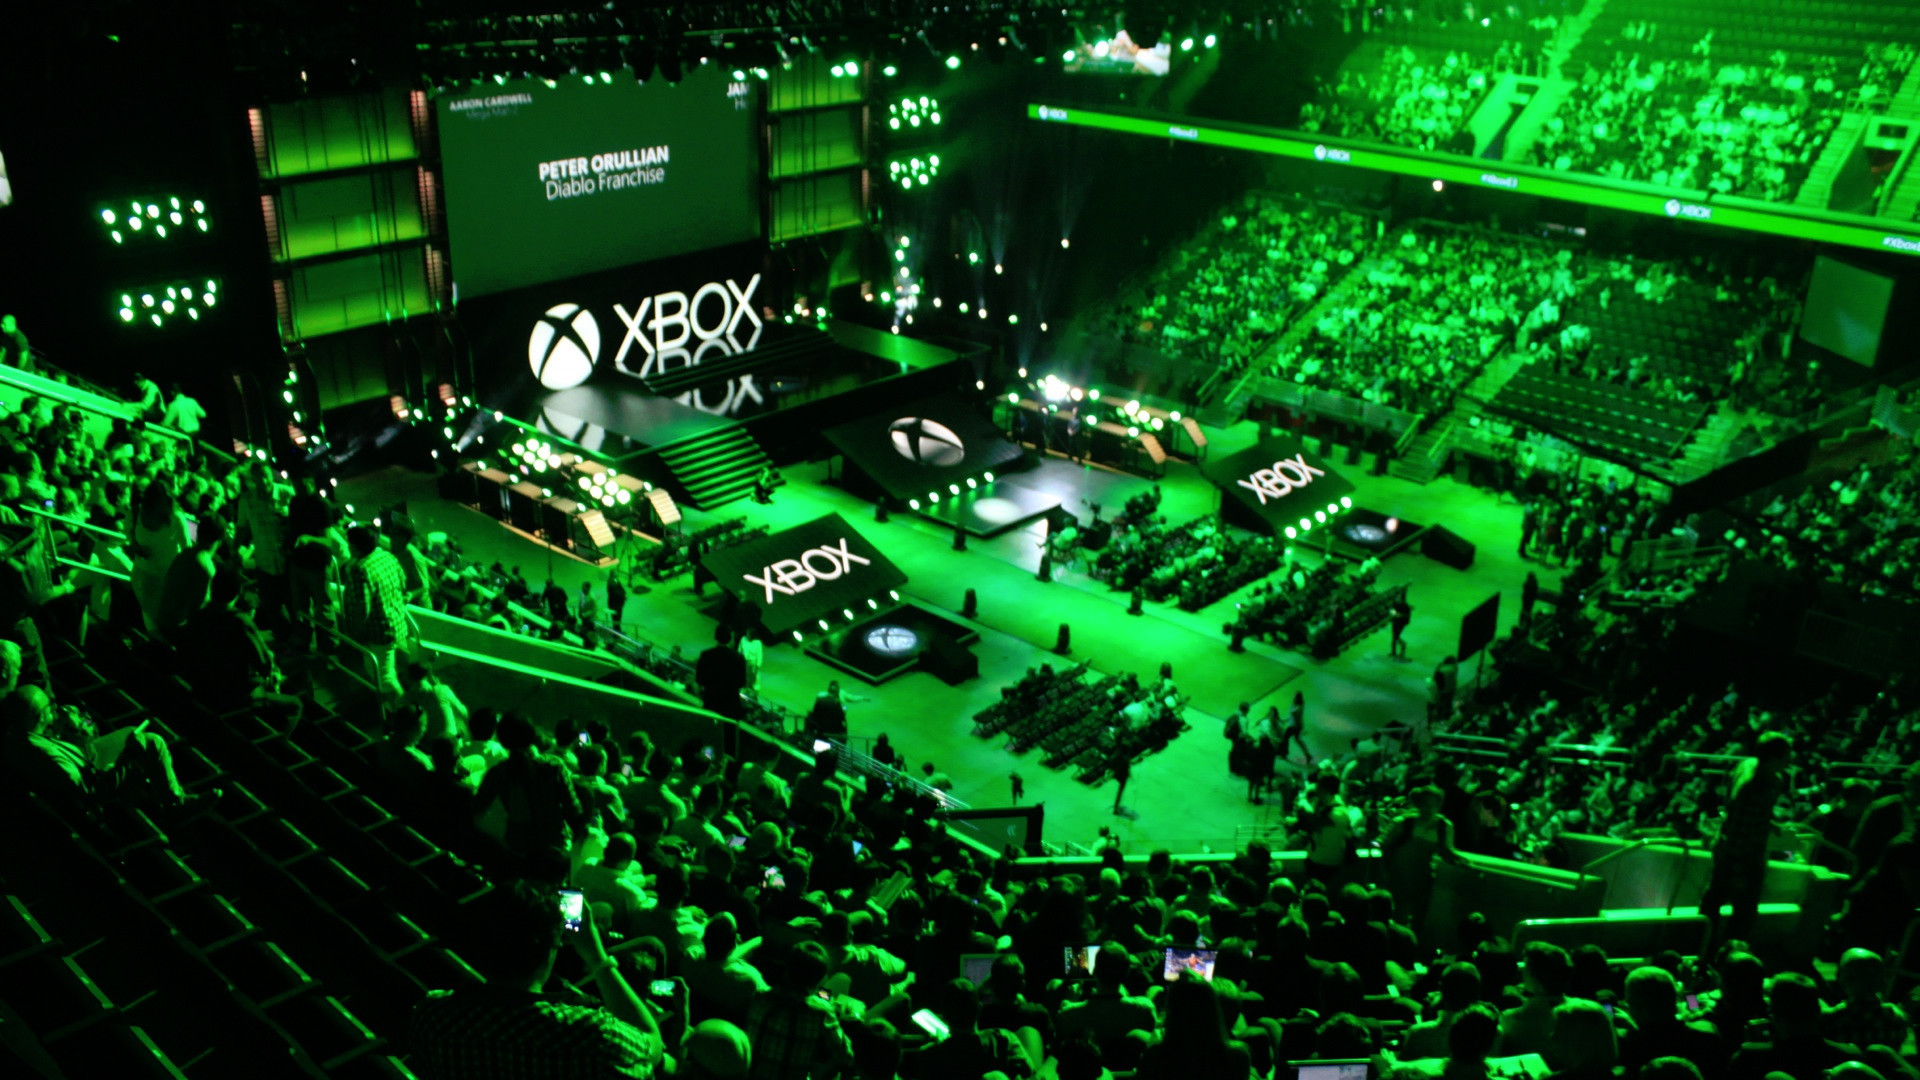 Battlefield 2042 Gameplay Revealed During Xbox/Bethesda E3 Showcase